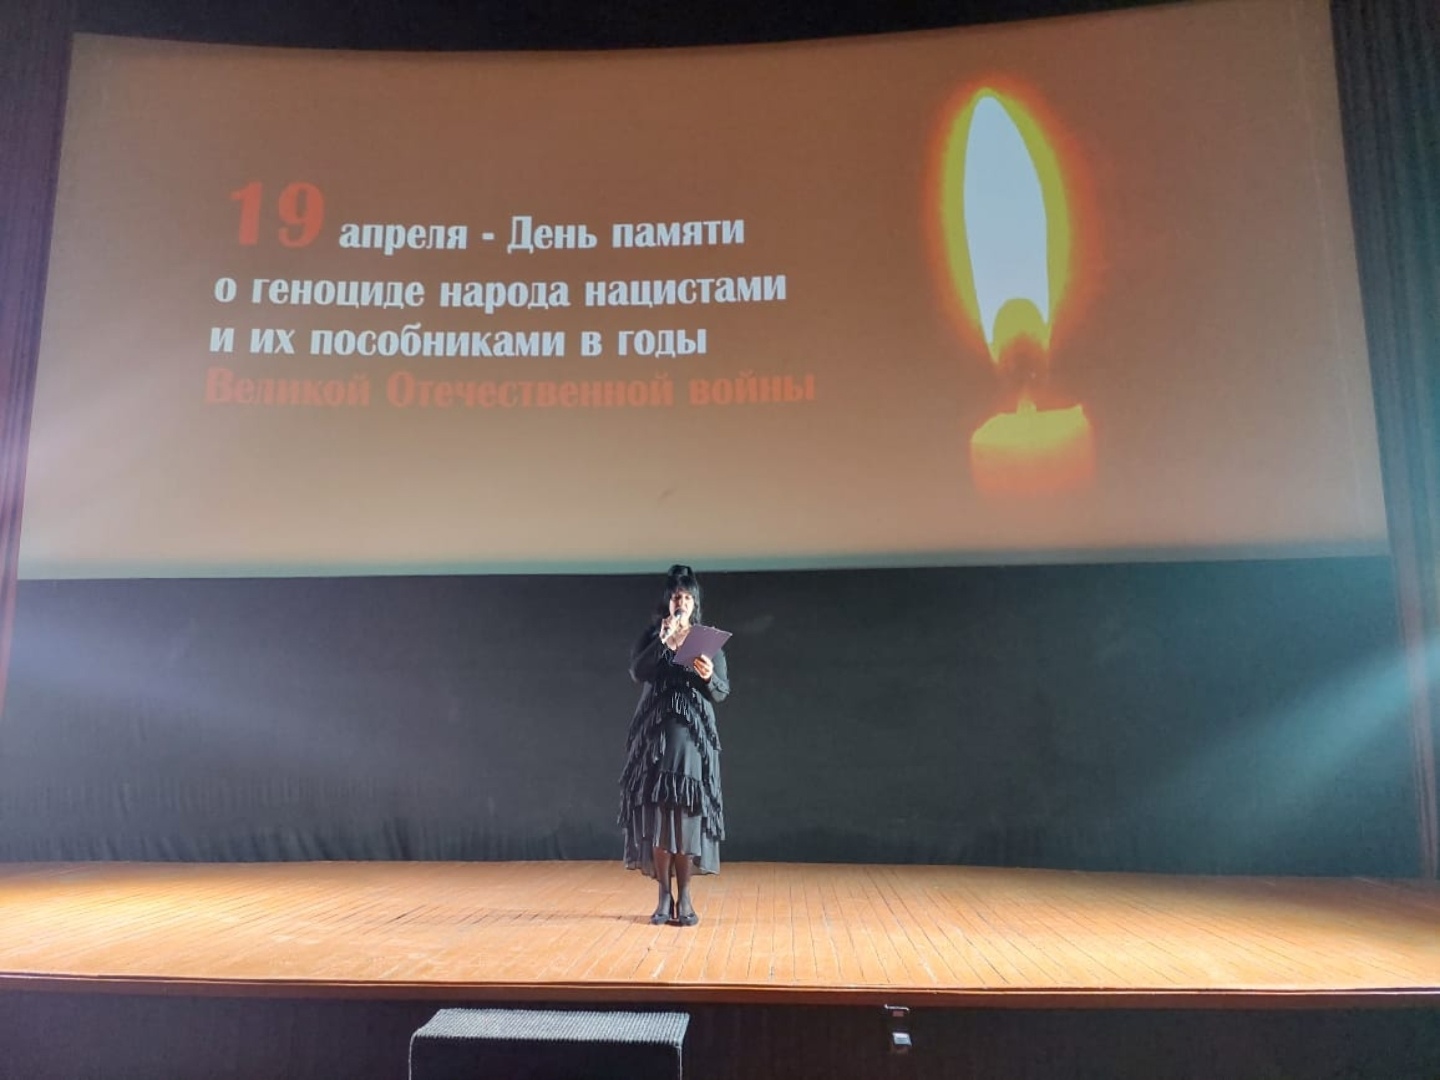 Мероприятие, посвященное  «Всероссийскому Дню единых действий в память о геноциде советского народа нацистами и их пособниками в годы ВОВ»